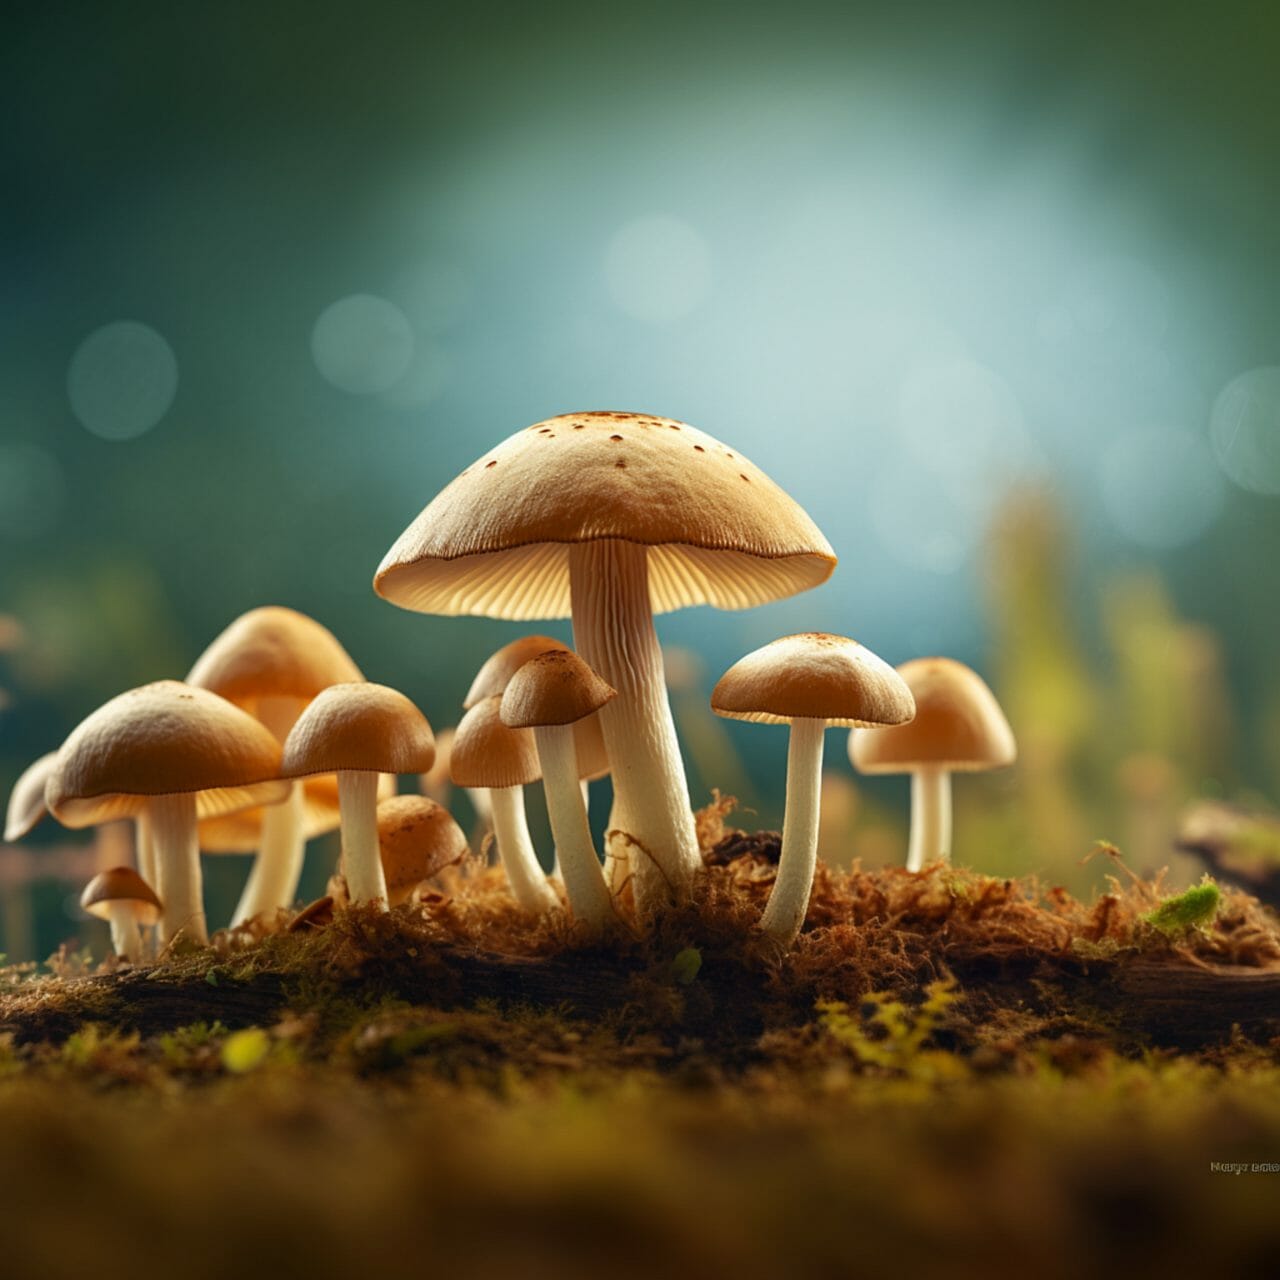 Mushrooms Neutropics Category Background Image